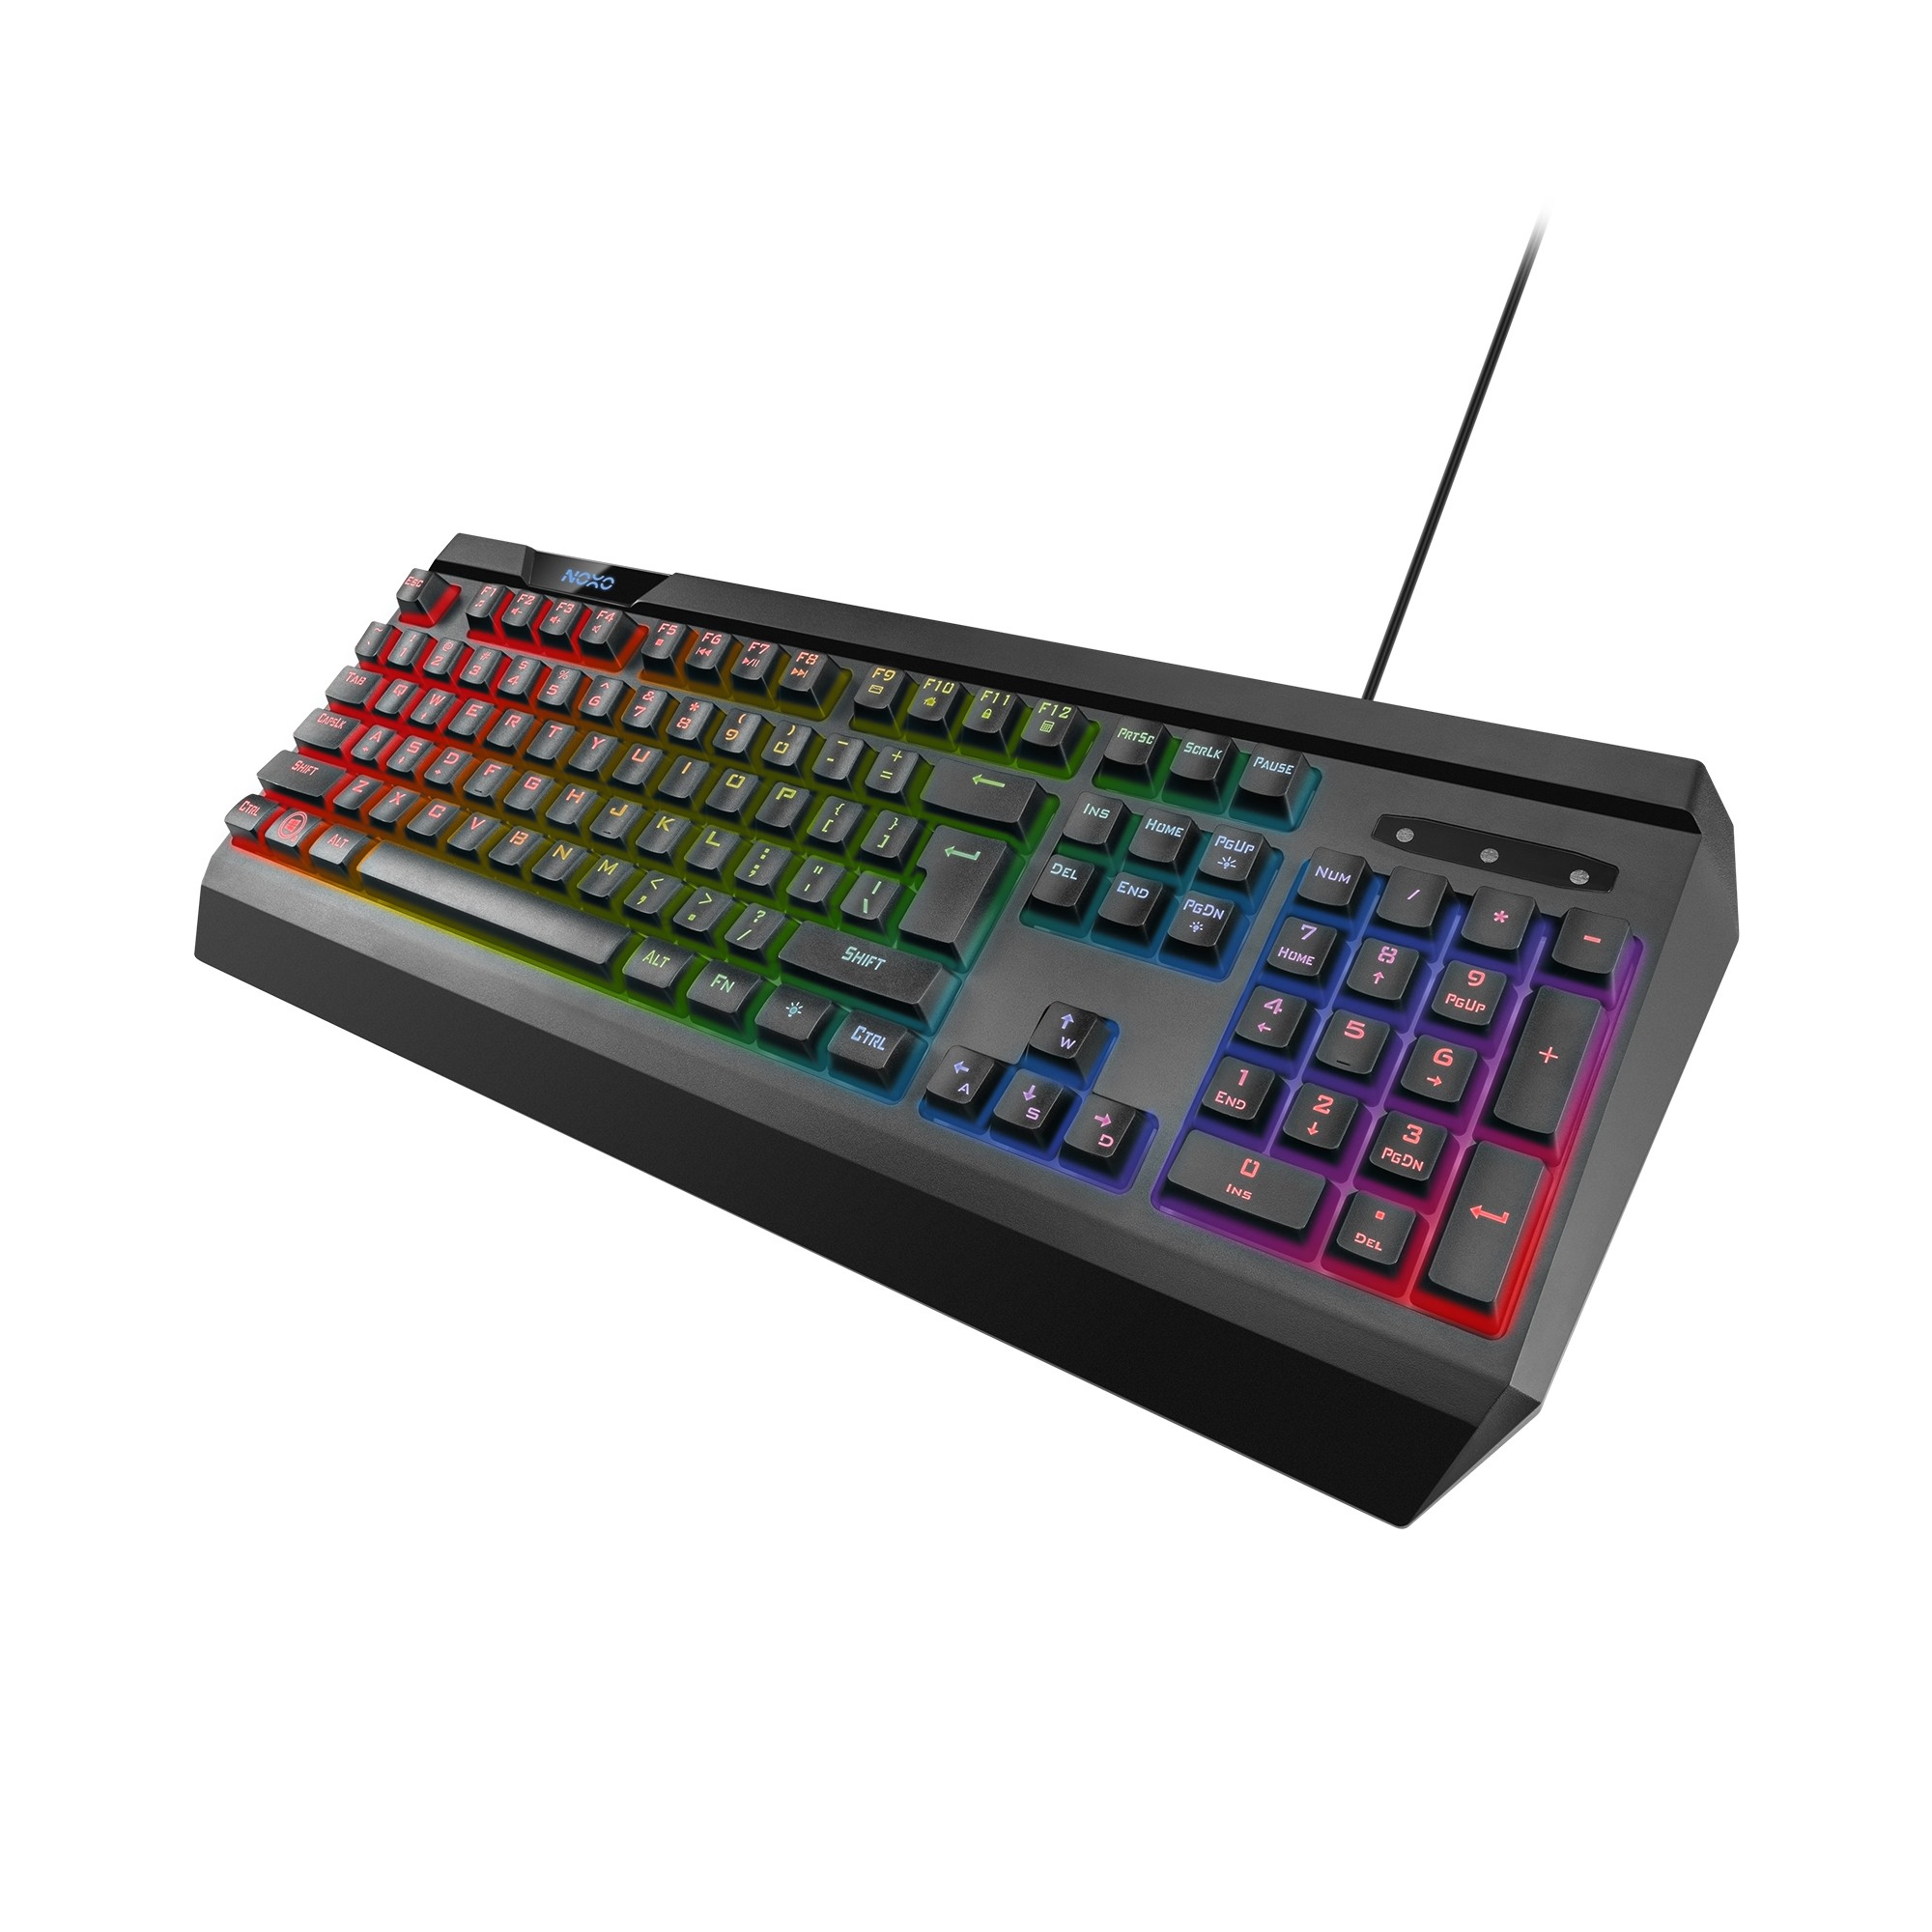 NOXO Origin membraninė laidinė RGB klaviatūra | US